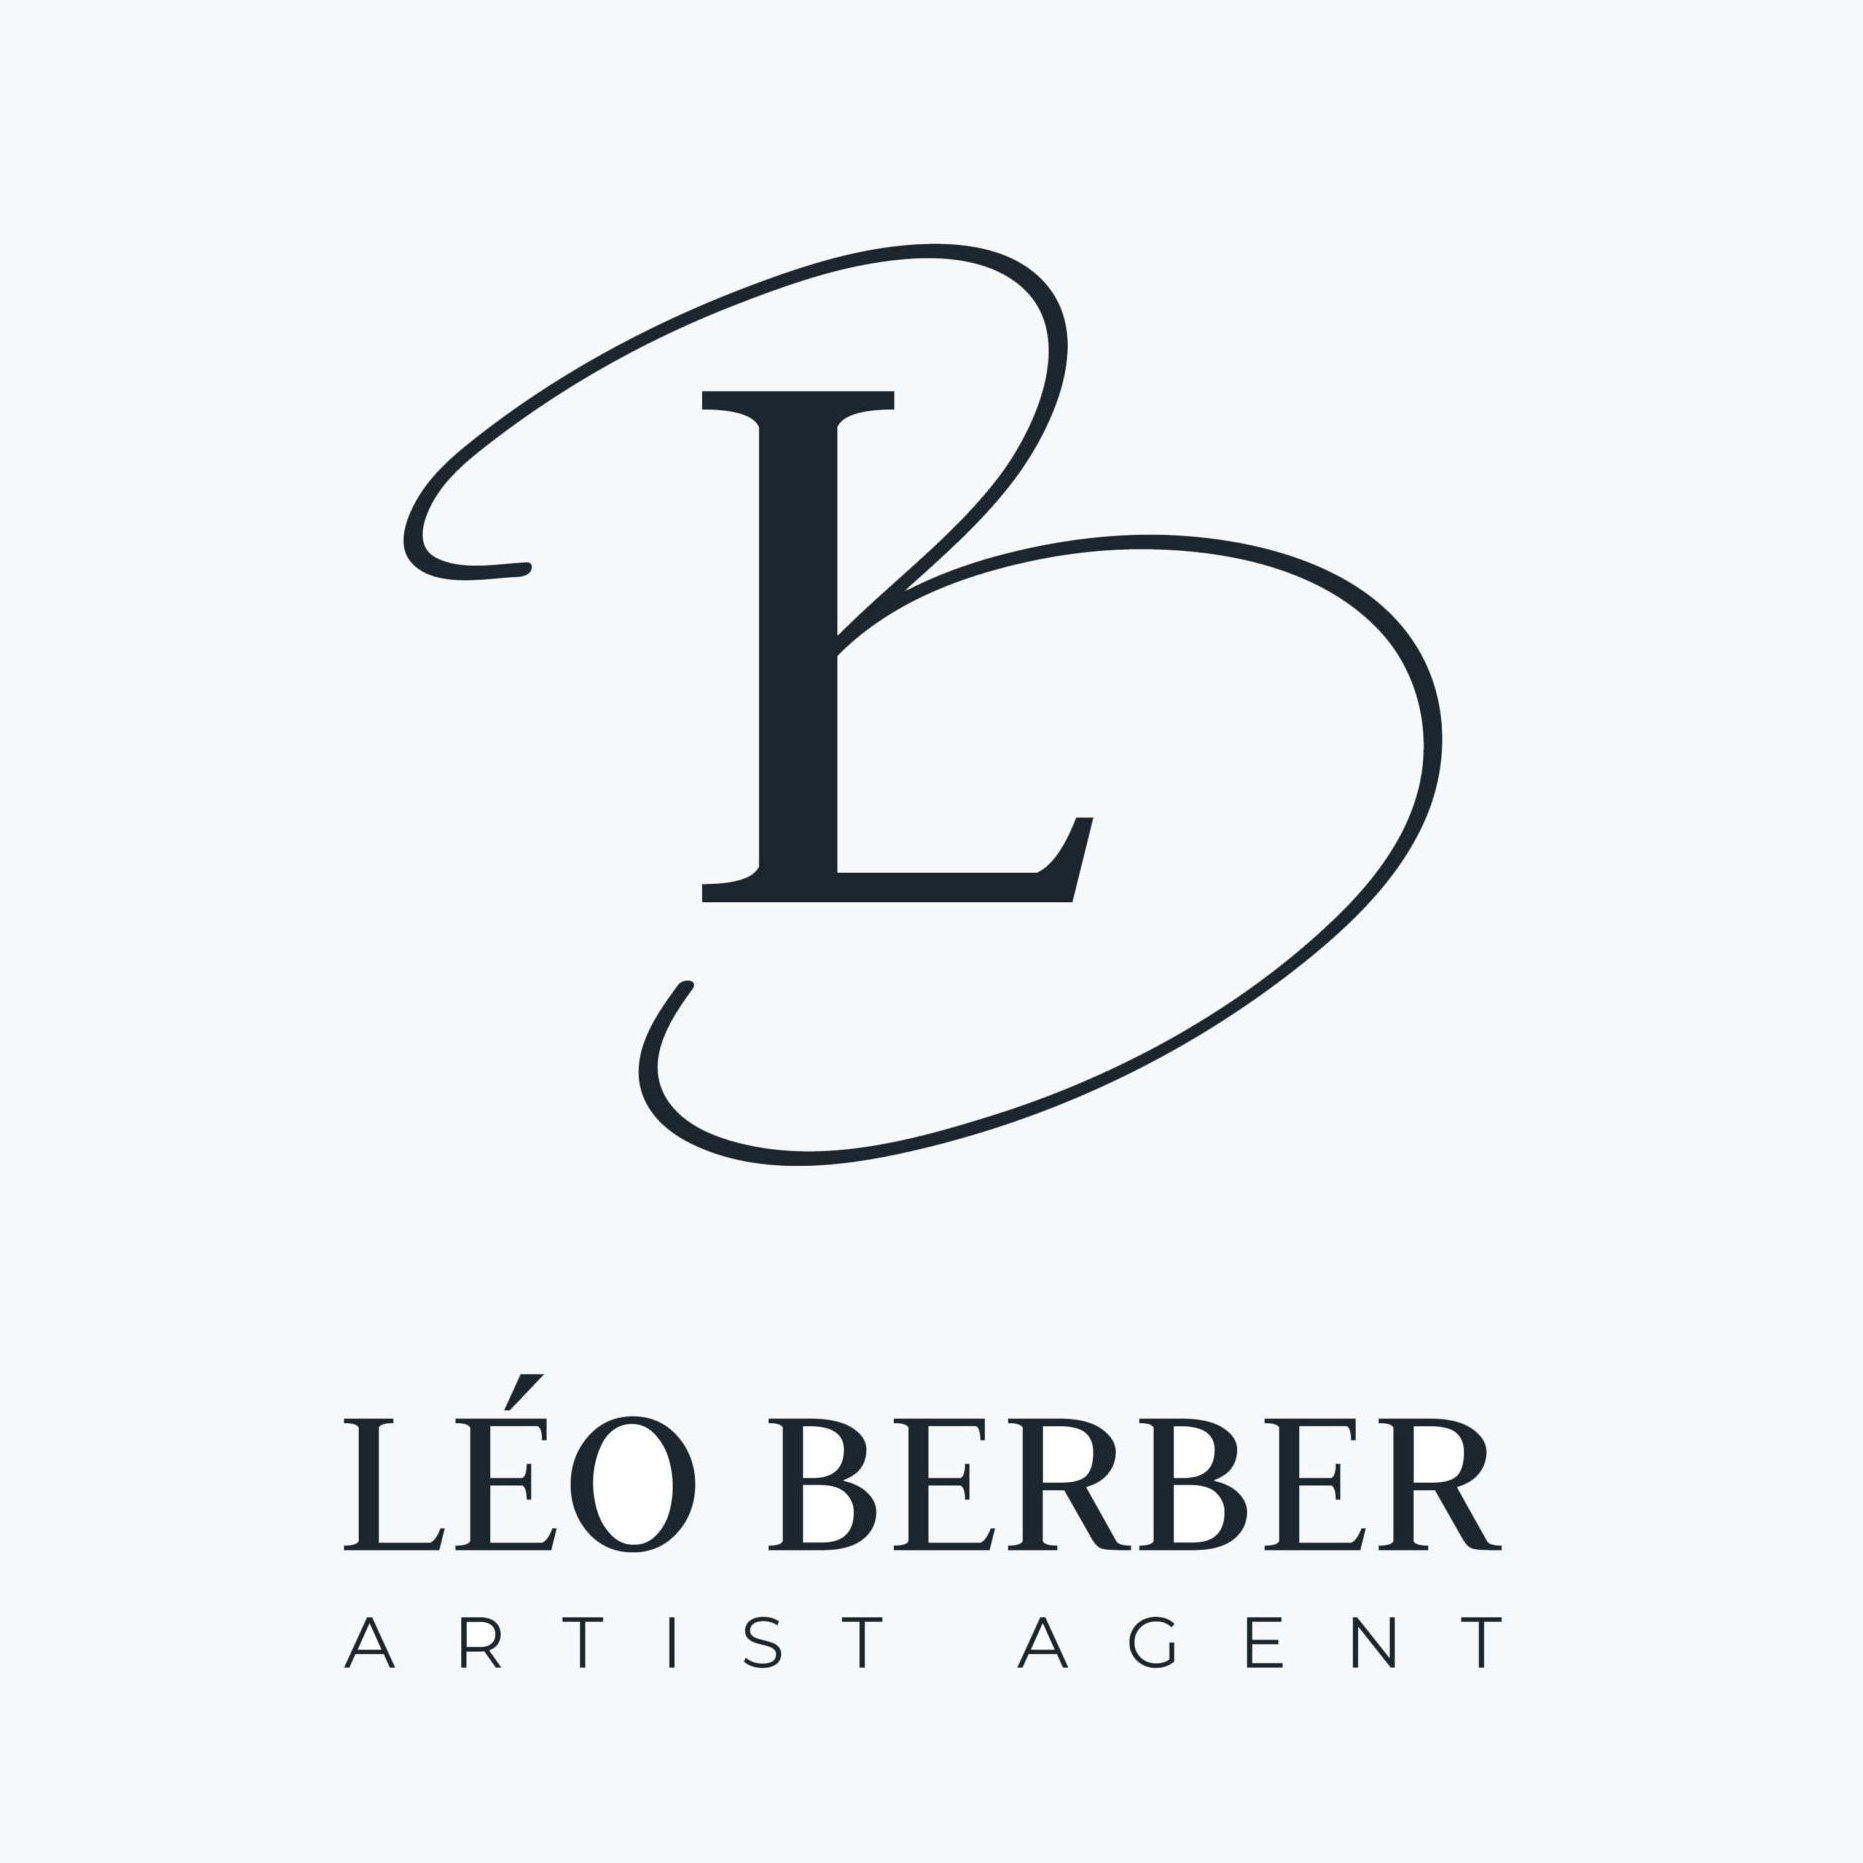 Léo Berber